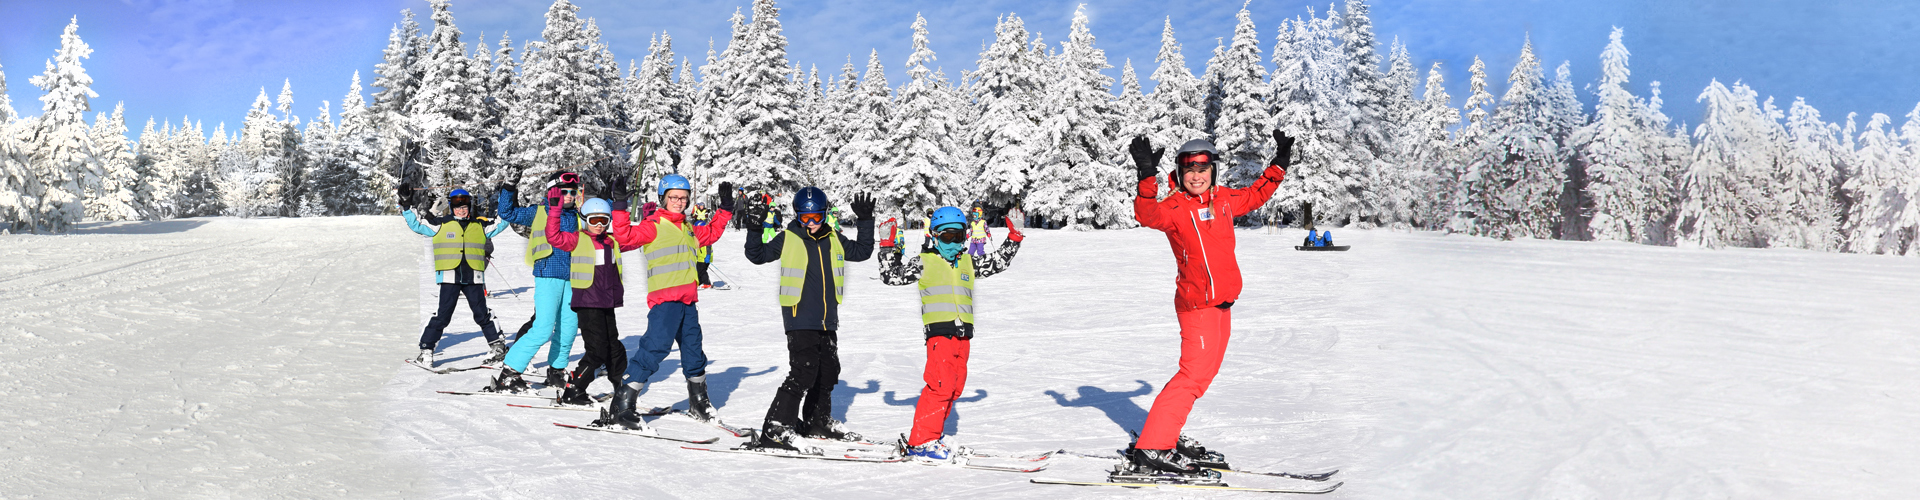 Lyžařská škola pro děti - dětská lyžařská výuka Krkonoše - kurz lyžování pro děti